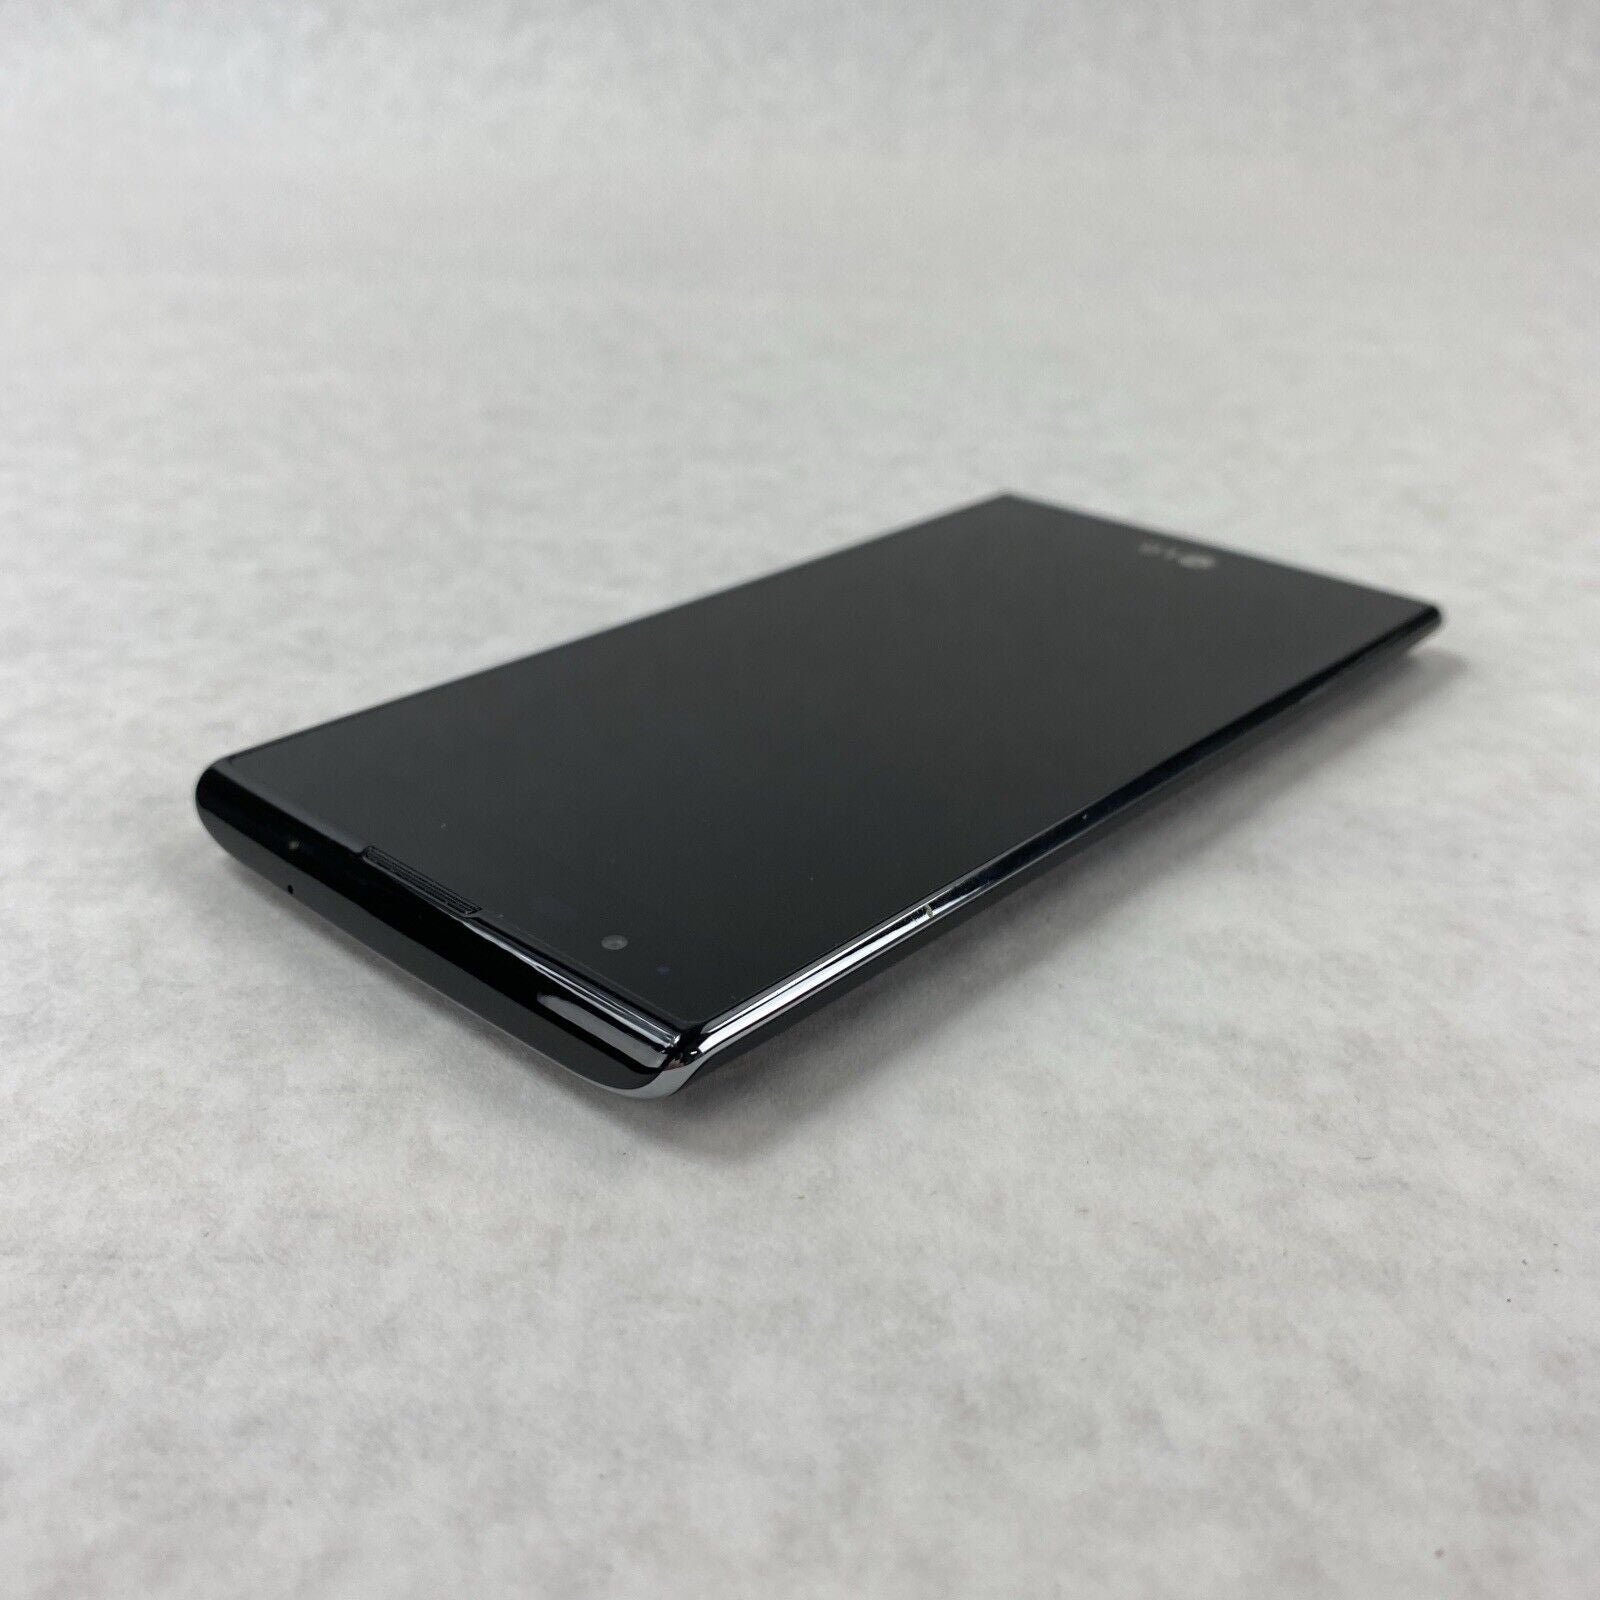 LG K8 V 16GB Verizon VS500 Smartphone Black